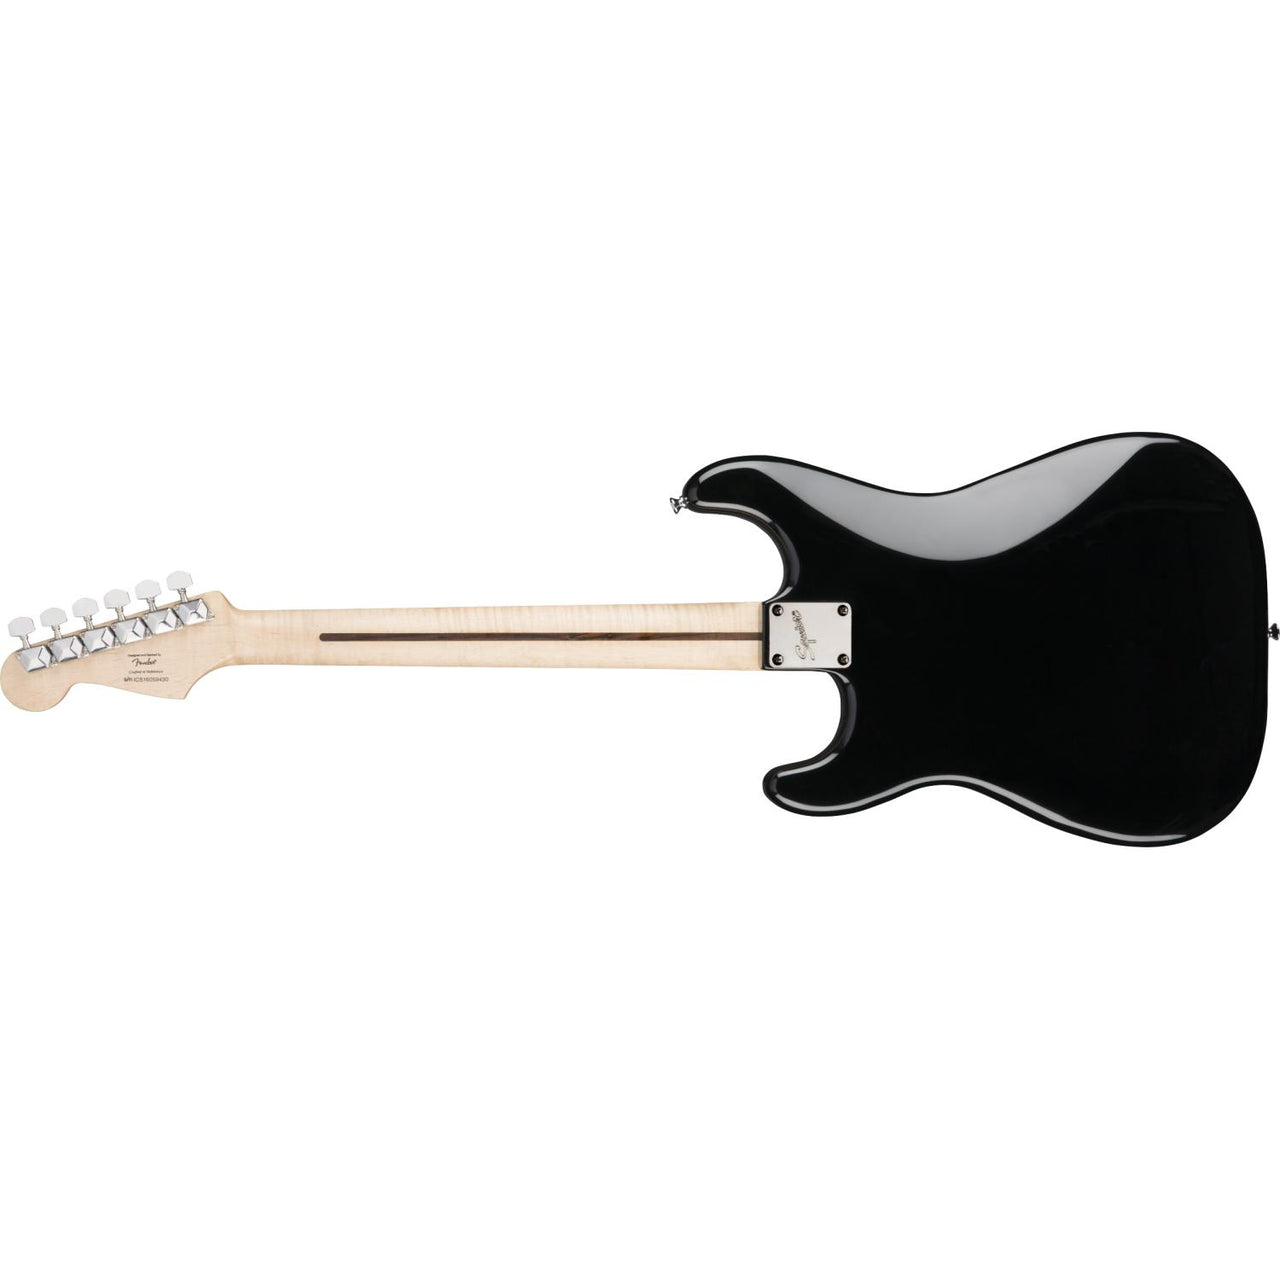 Guitarra Fender Bullet Stratocaster Black Electrica 0371001506